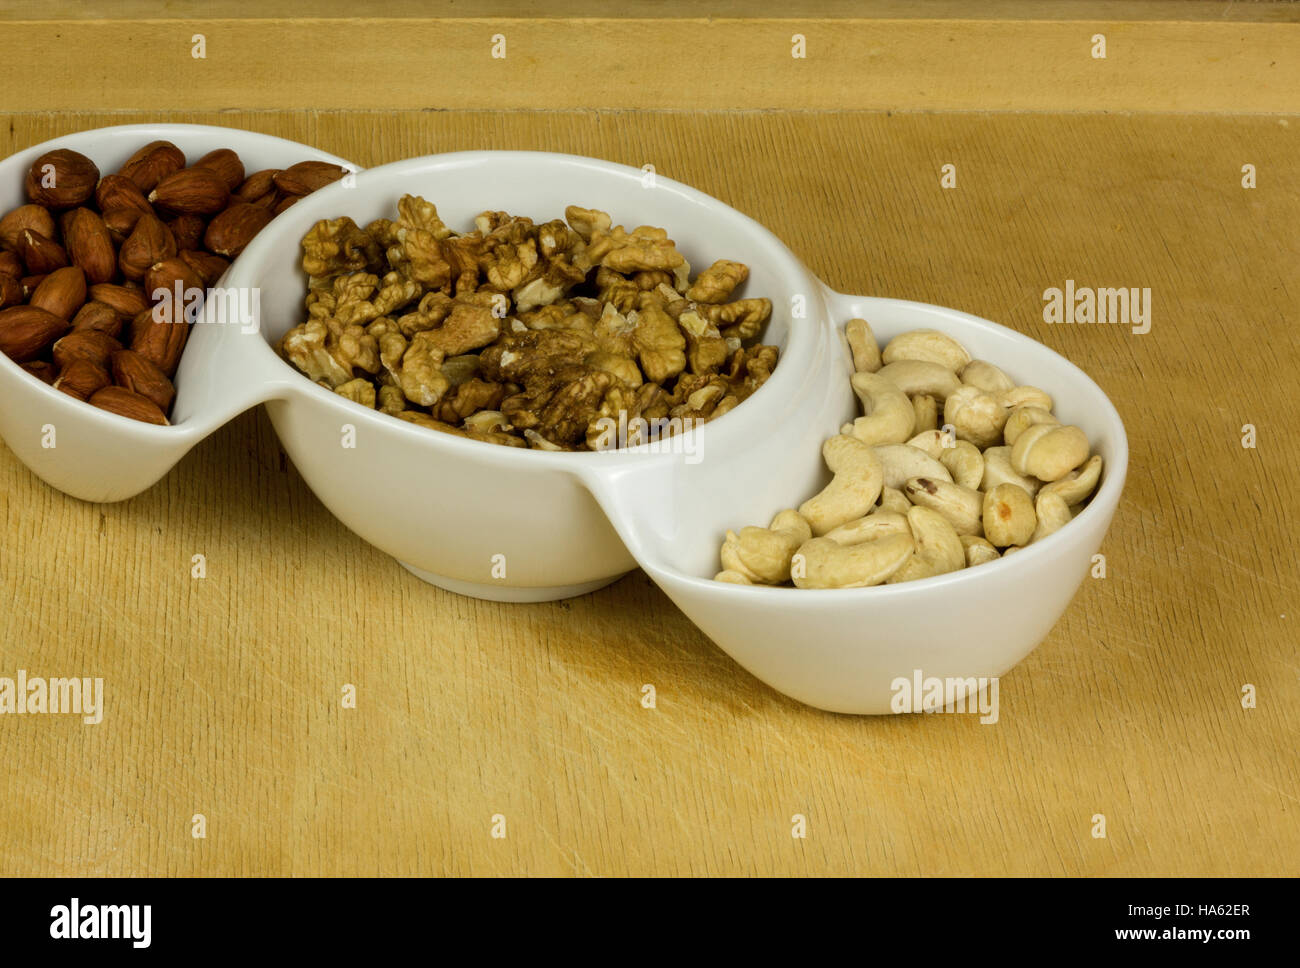 Tre tipi di dadi freschi ,Indian mandorle,(Macadamia) noci, nocciole in una ciotola bianco. Mangiare sano . Chiudere, vista orizzontale. Foto Stock